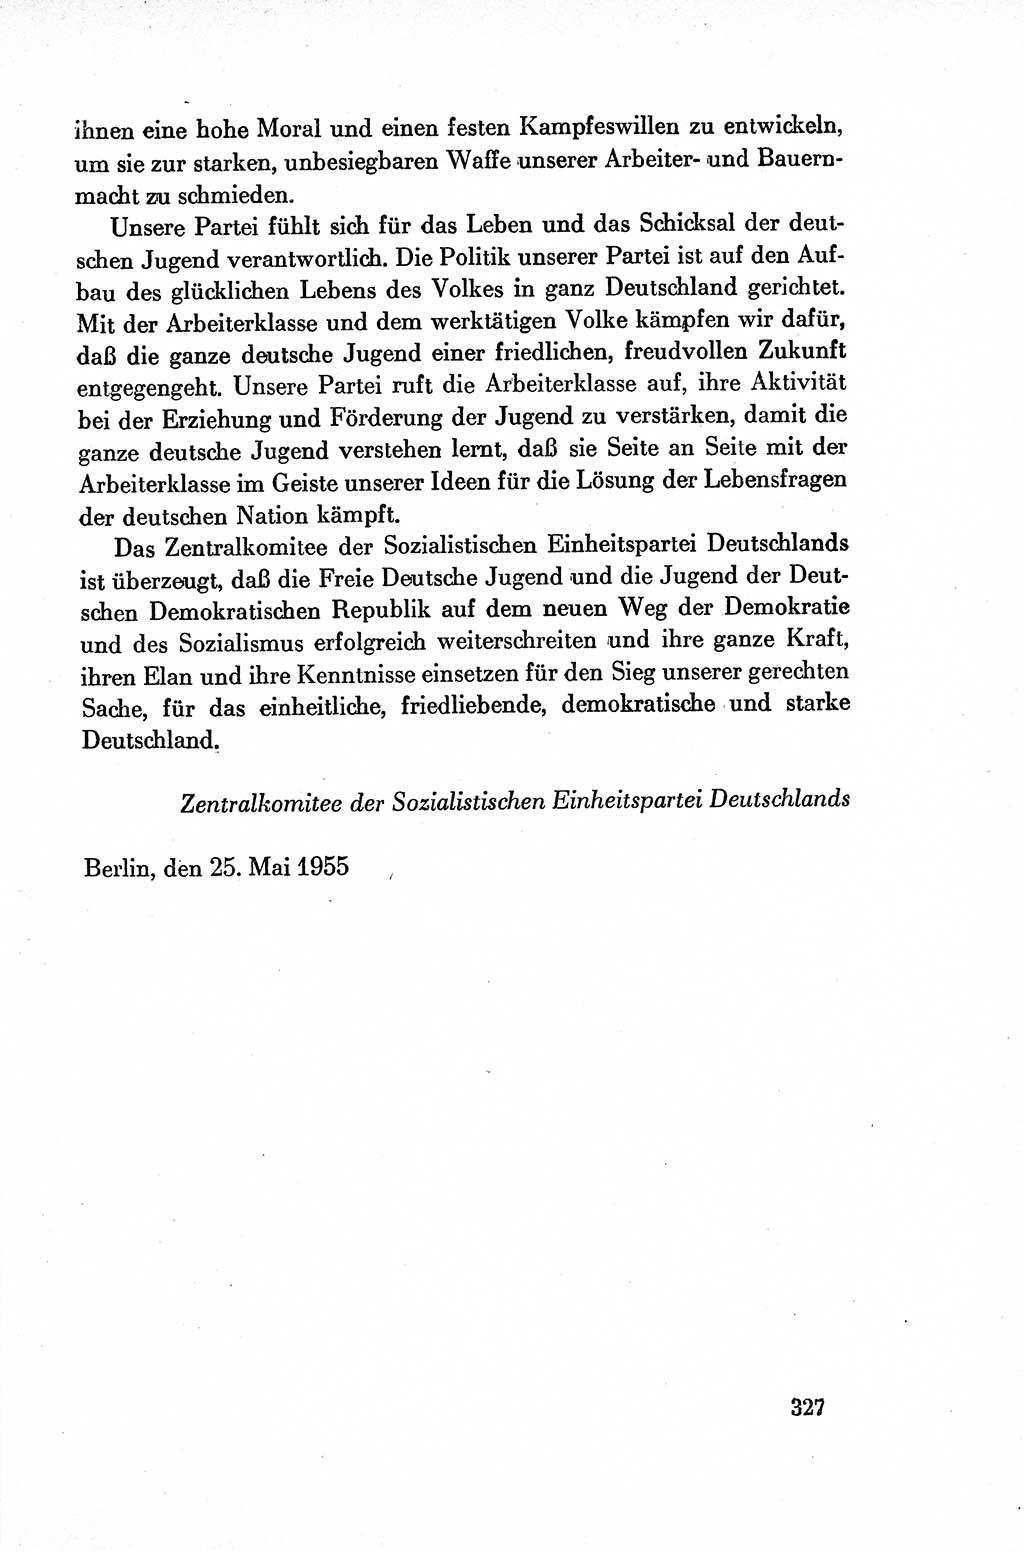 Dokumente der Sozialistischen Einheitspartei Deutschlands (SED) [Deutsche Demokratische Republik (DDR)] 1954-1955, Seite 327 (Dok. SED DDR 1954-1955, S. 327)